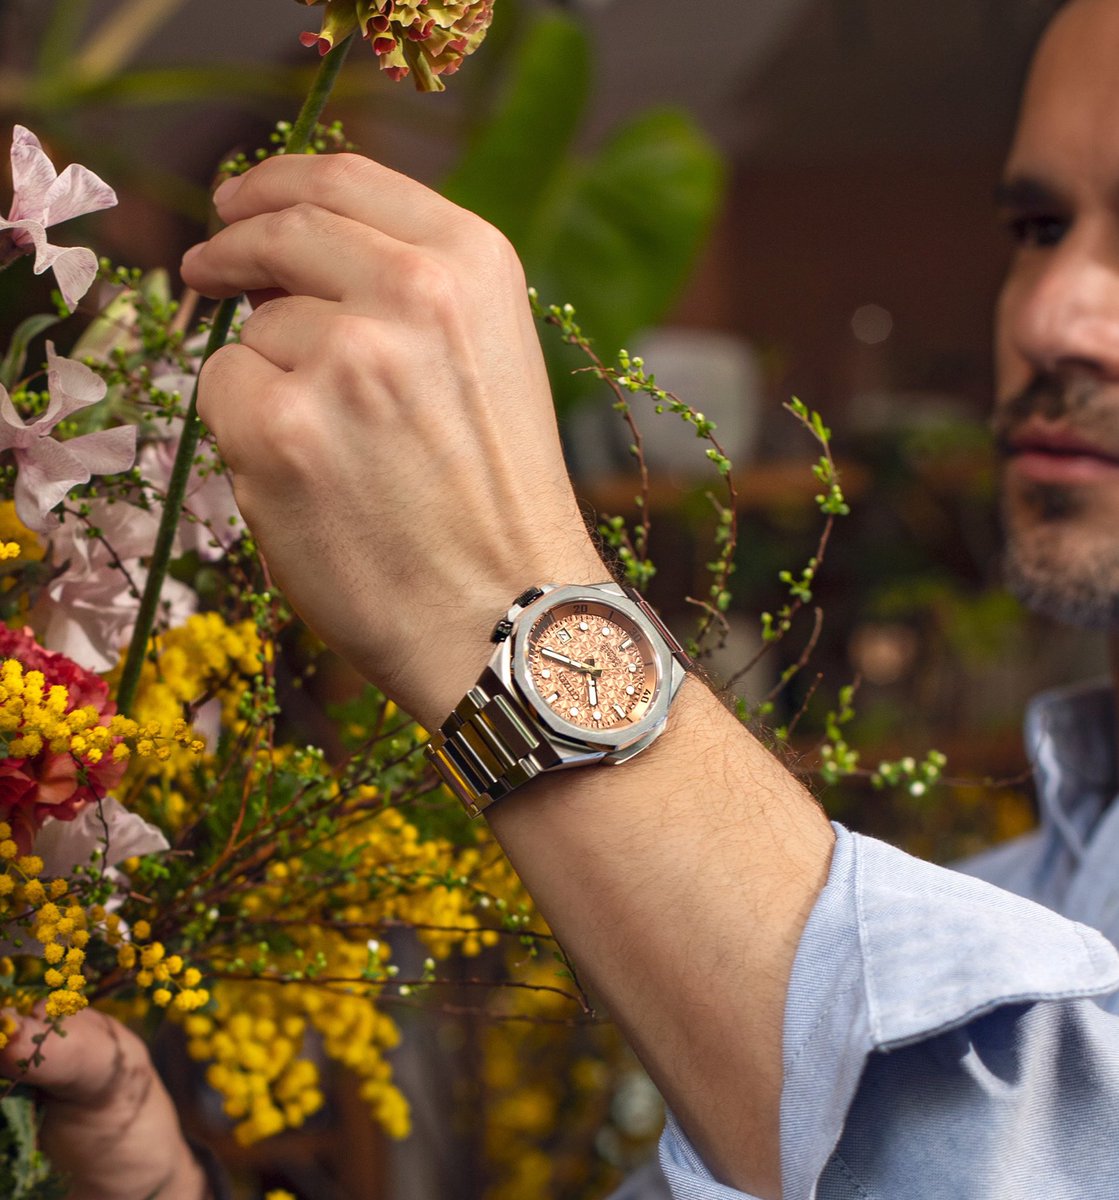 機械式時計ブランド『シリーズエイト』から、“春”をテーマに桜をイメージした「890 Mechanical」限定モデルをご紹介！…